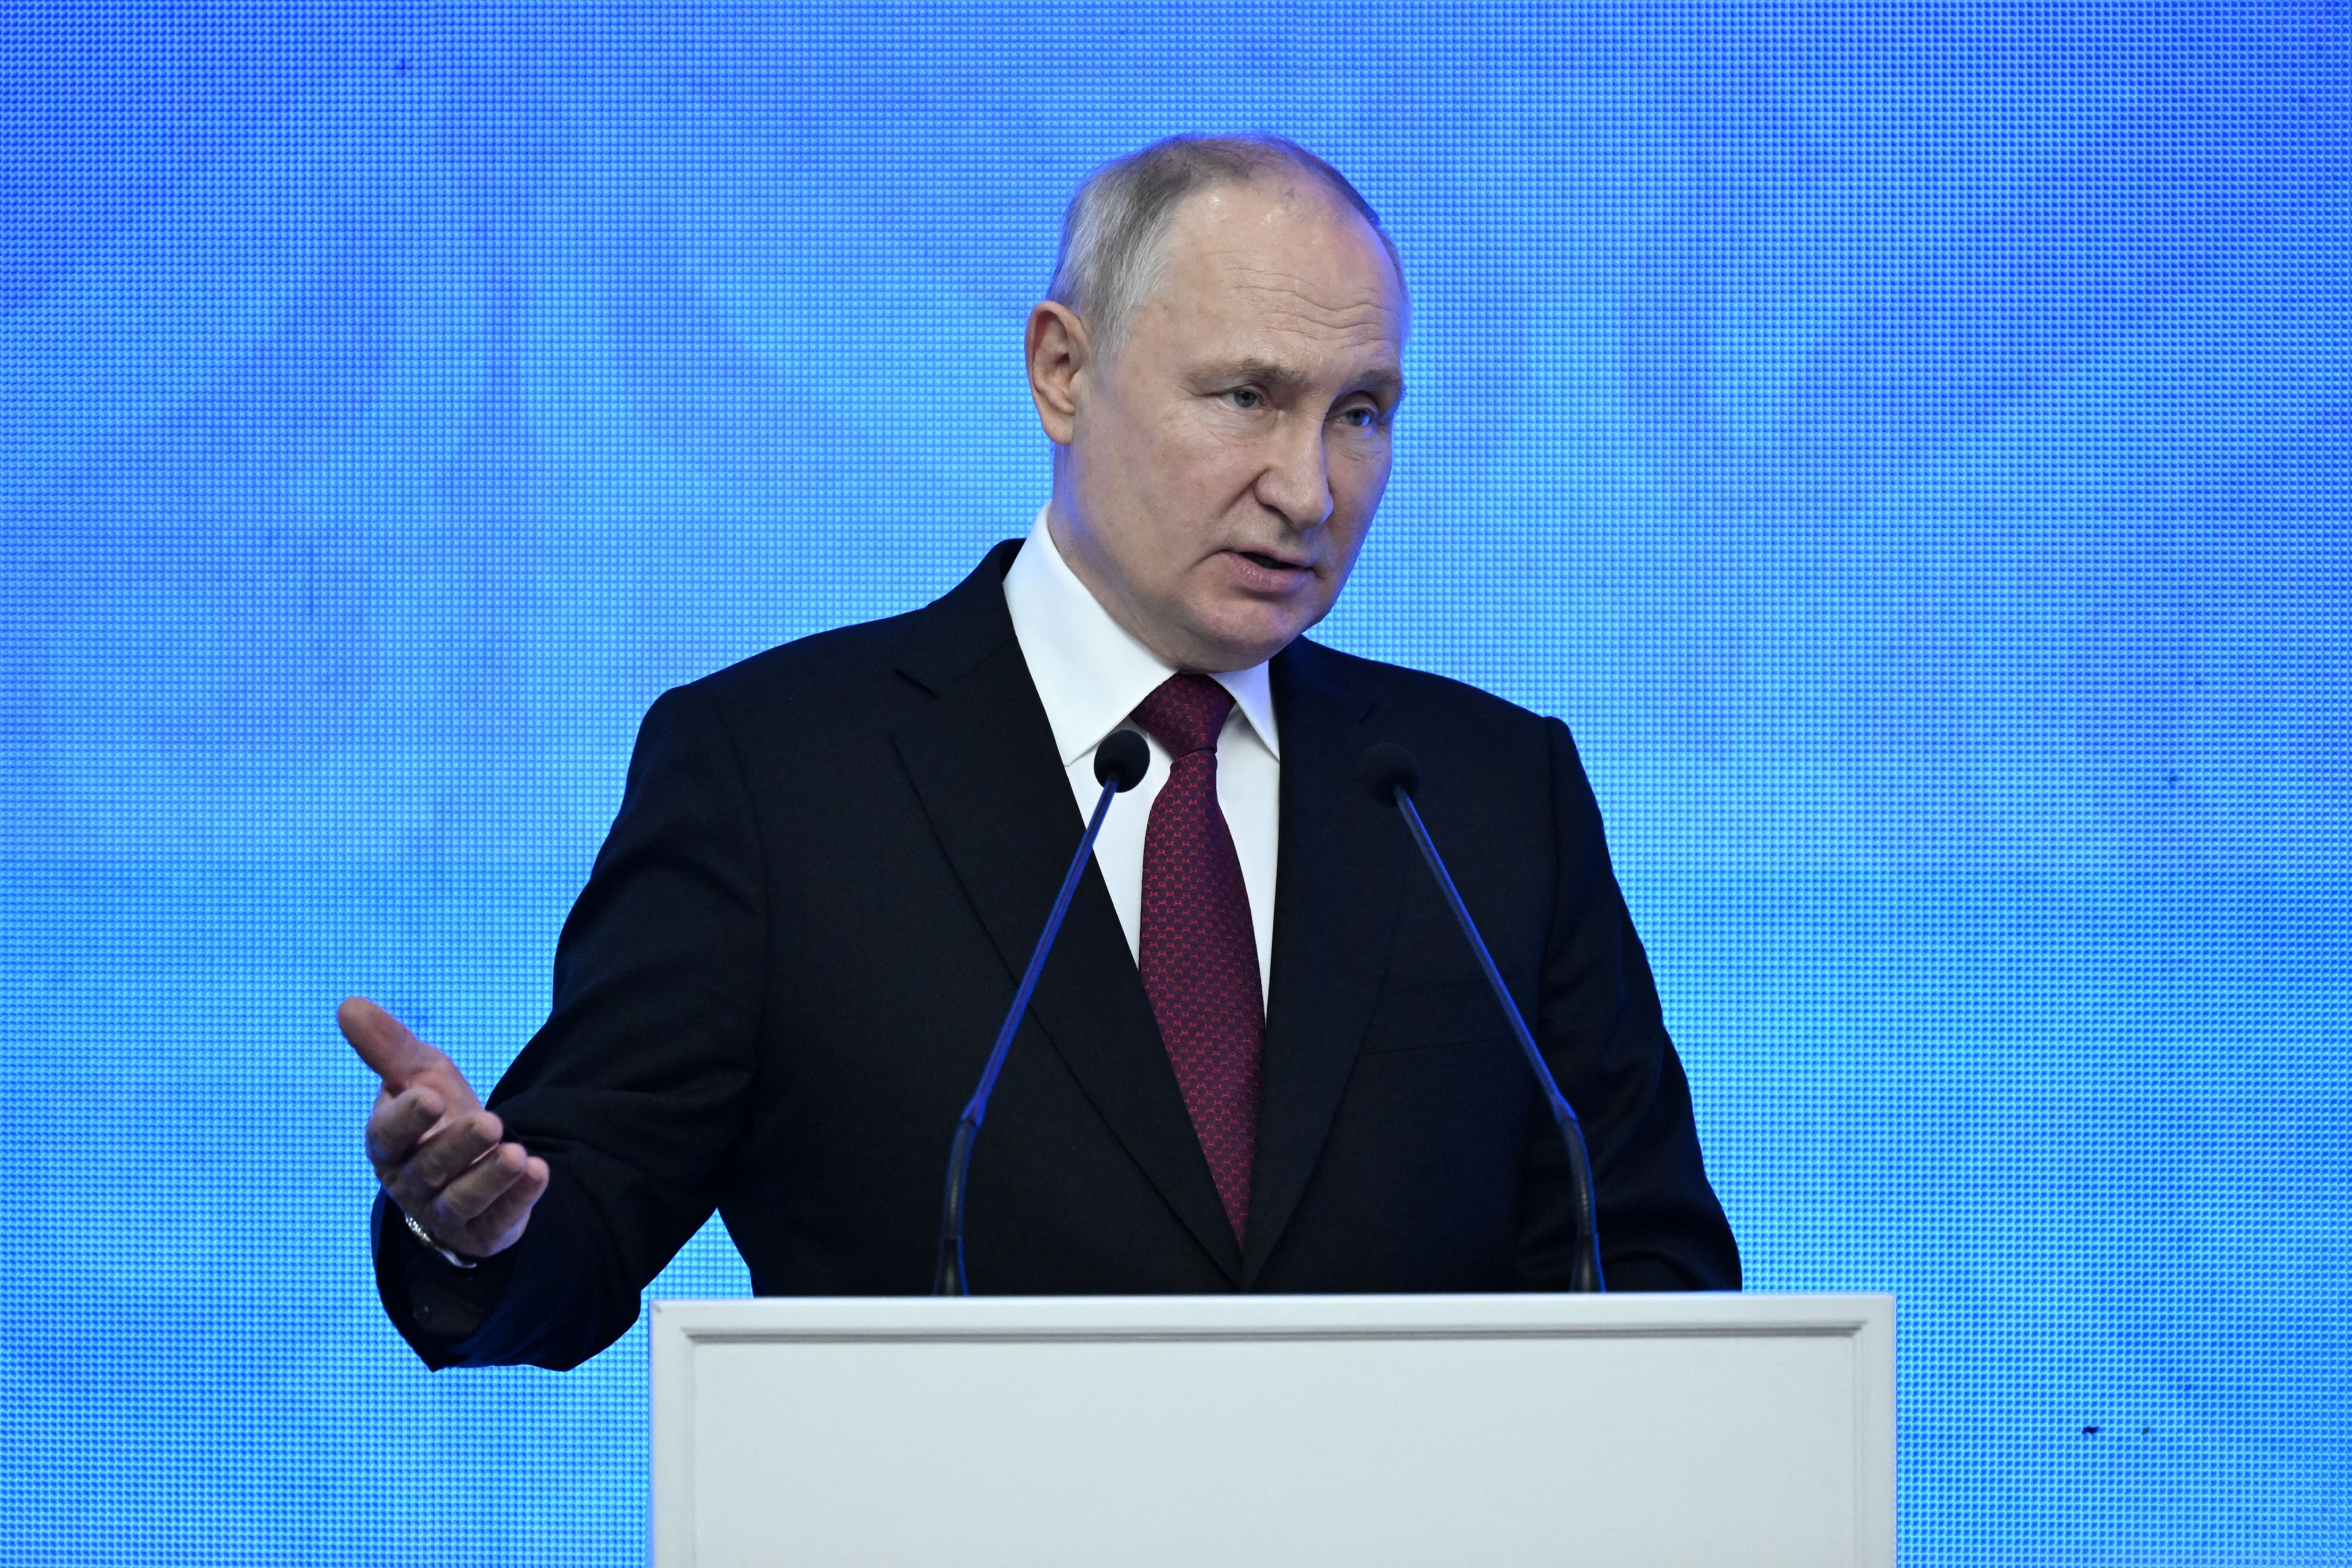 El presidente ruso Vladimir Putin pronuncia un discurso después de las conversaciones entre Rusia y Kirguistán en Bishkek, Kirguistán, el 12 de octubre de 2023. Sputnik/Pavel Bednyakov/Kremlin vía REUTERS